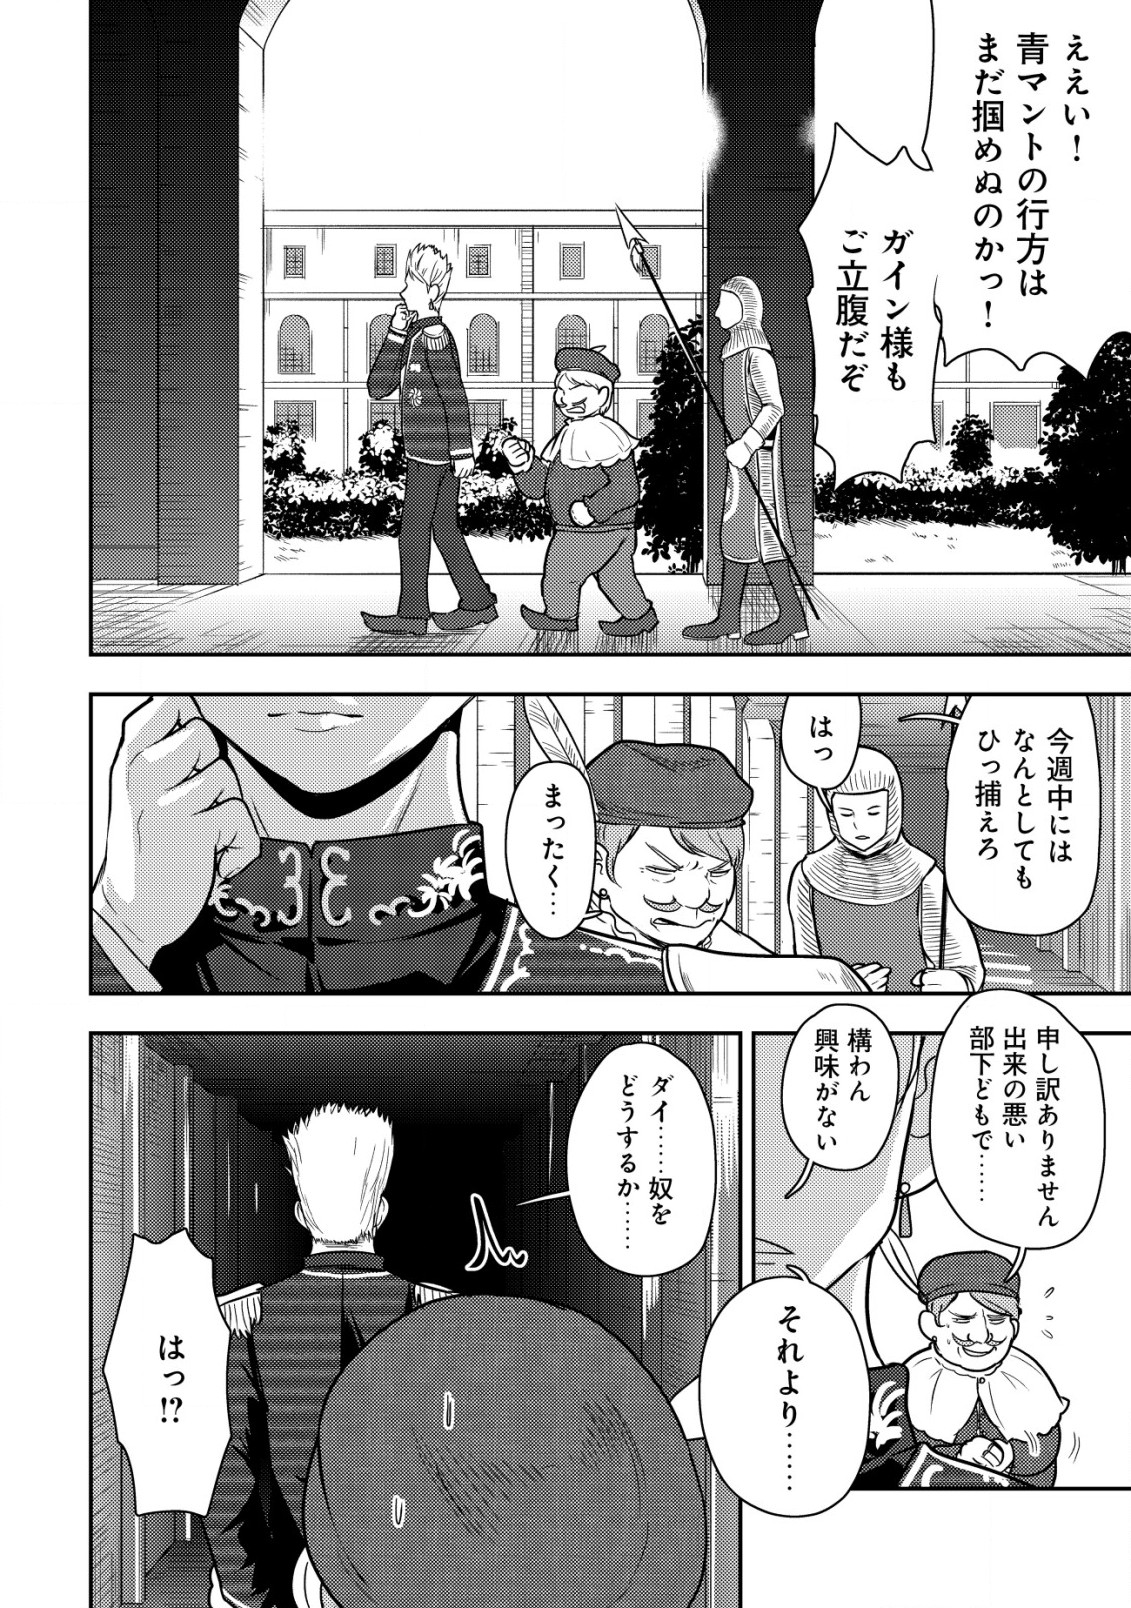 35-sai No Sentaku: Isekai Tensei O Eranda Baai - Chapter 22 - Page 2